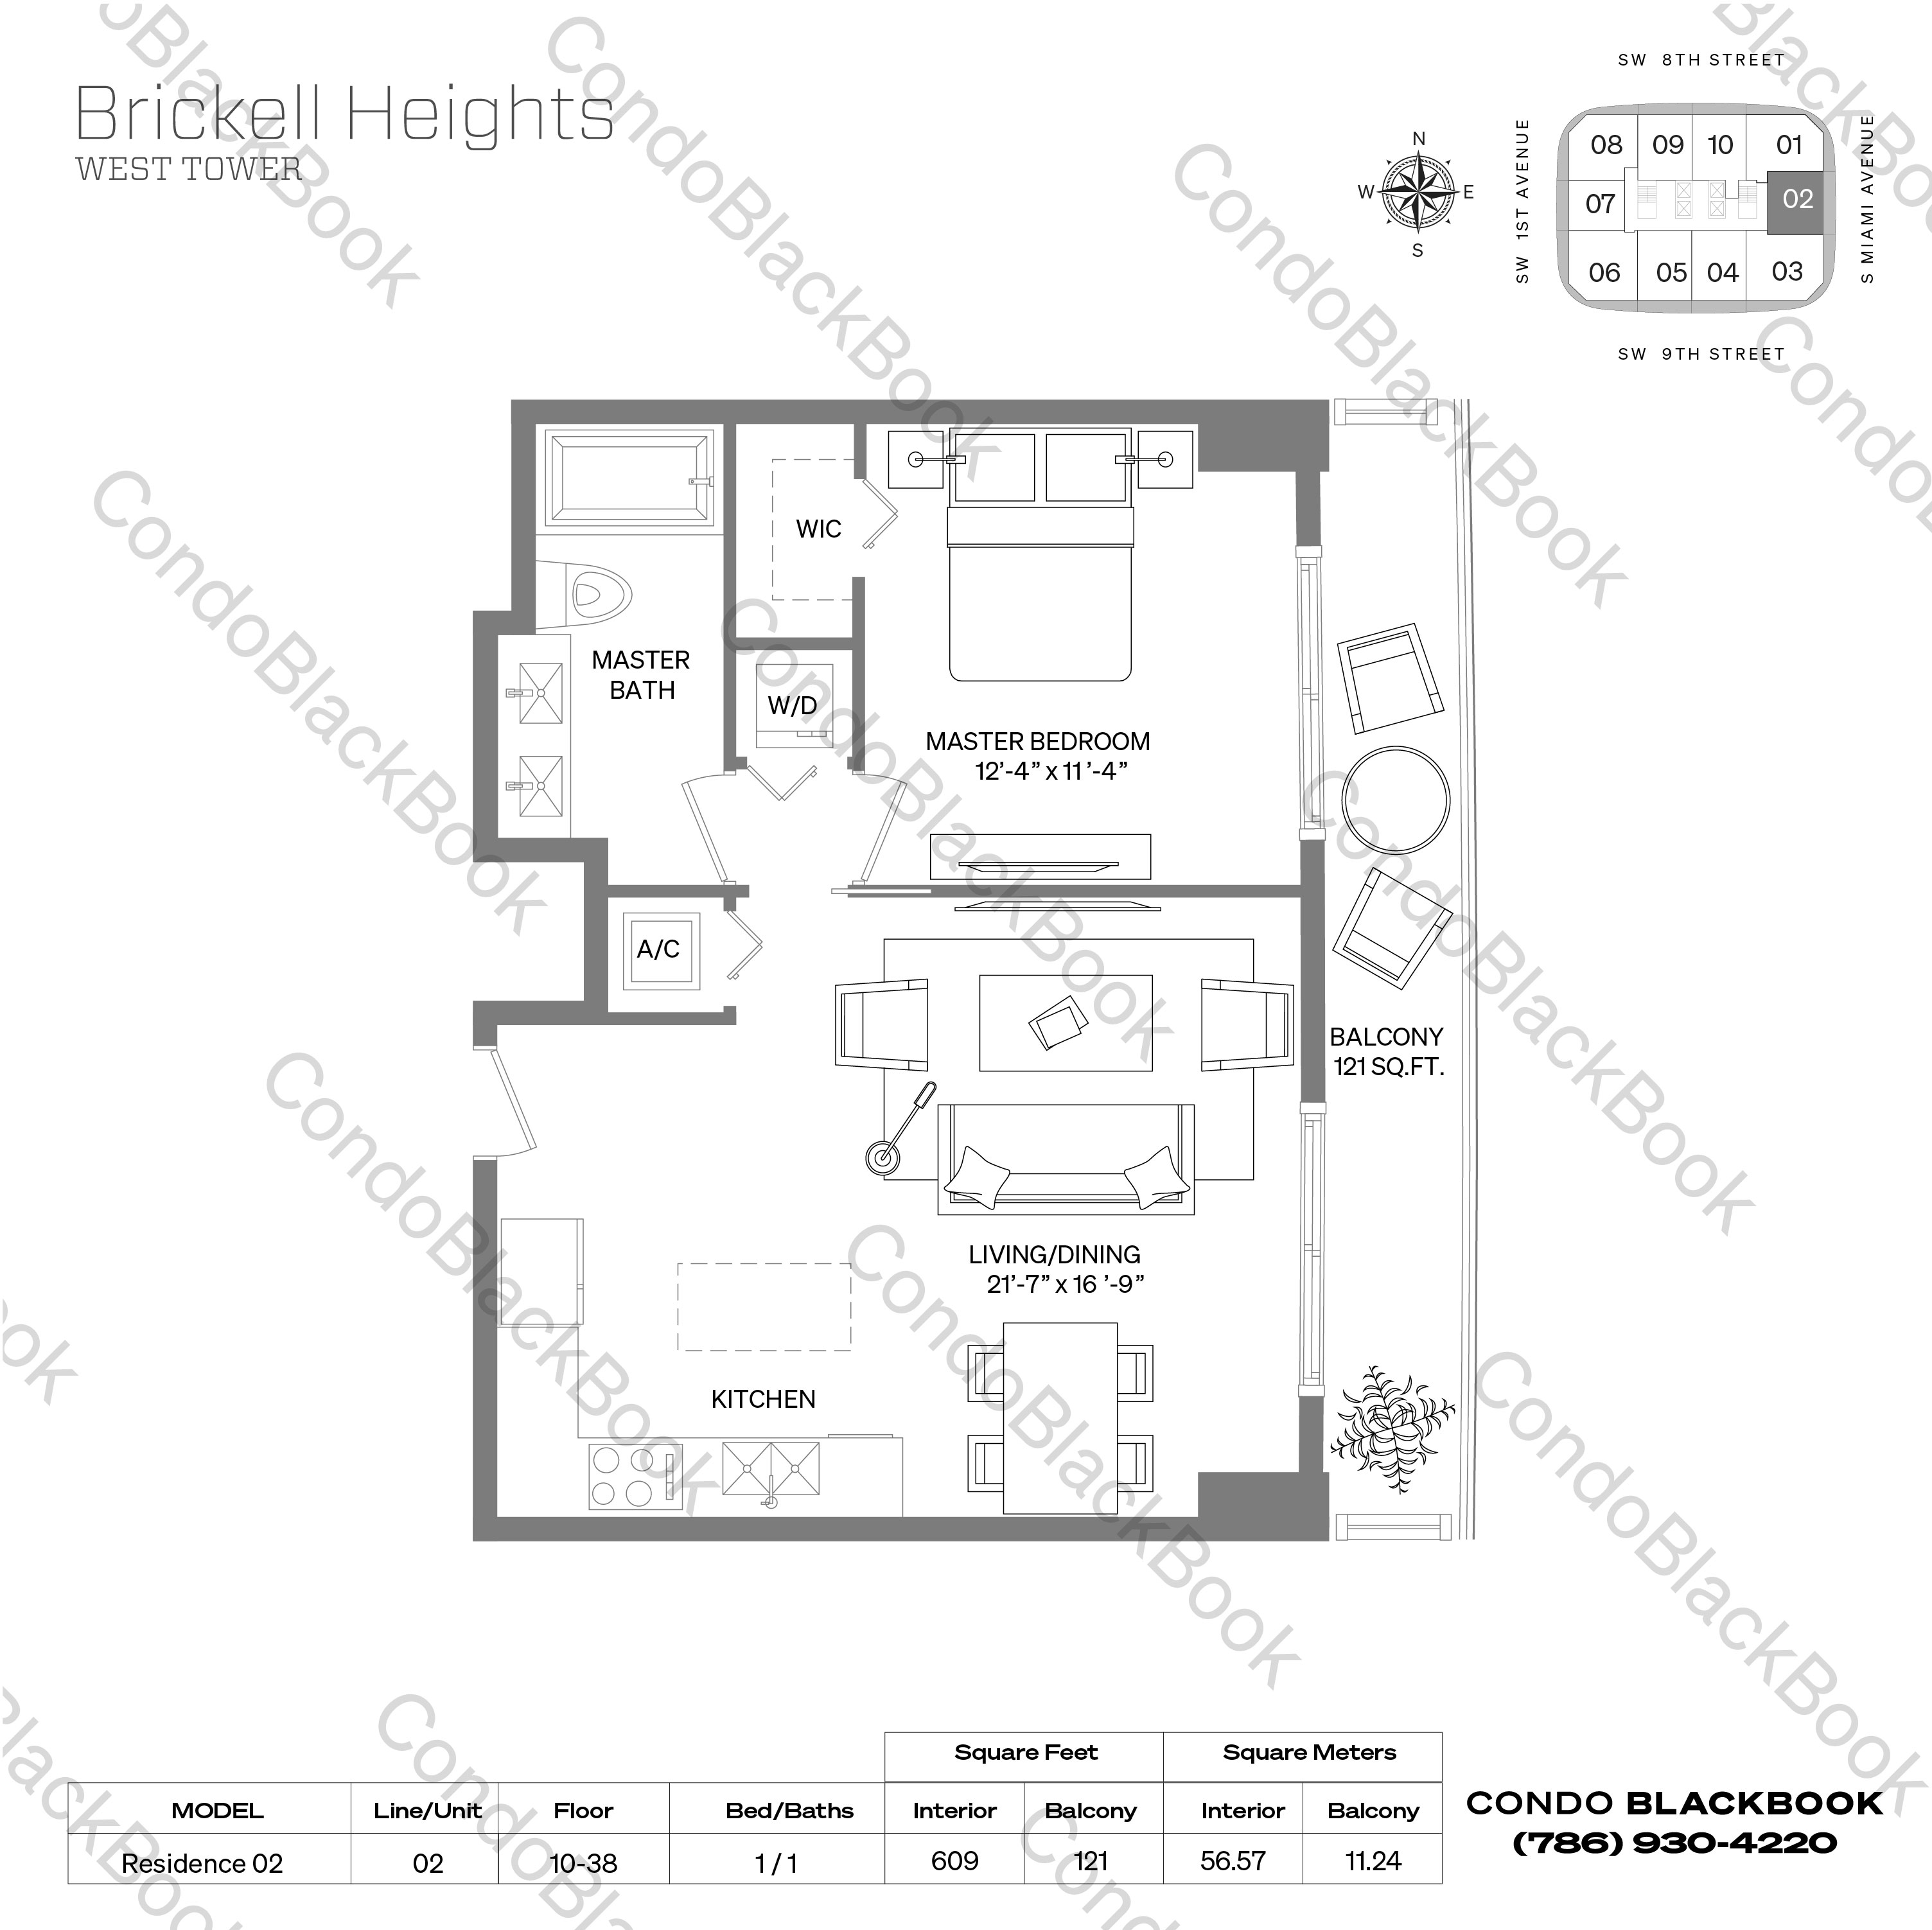 Brickell Heights West Tower Unit #2702 Condo in Brickell - Miami Condos ...